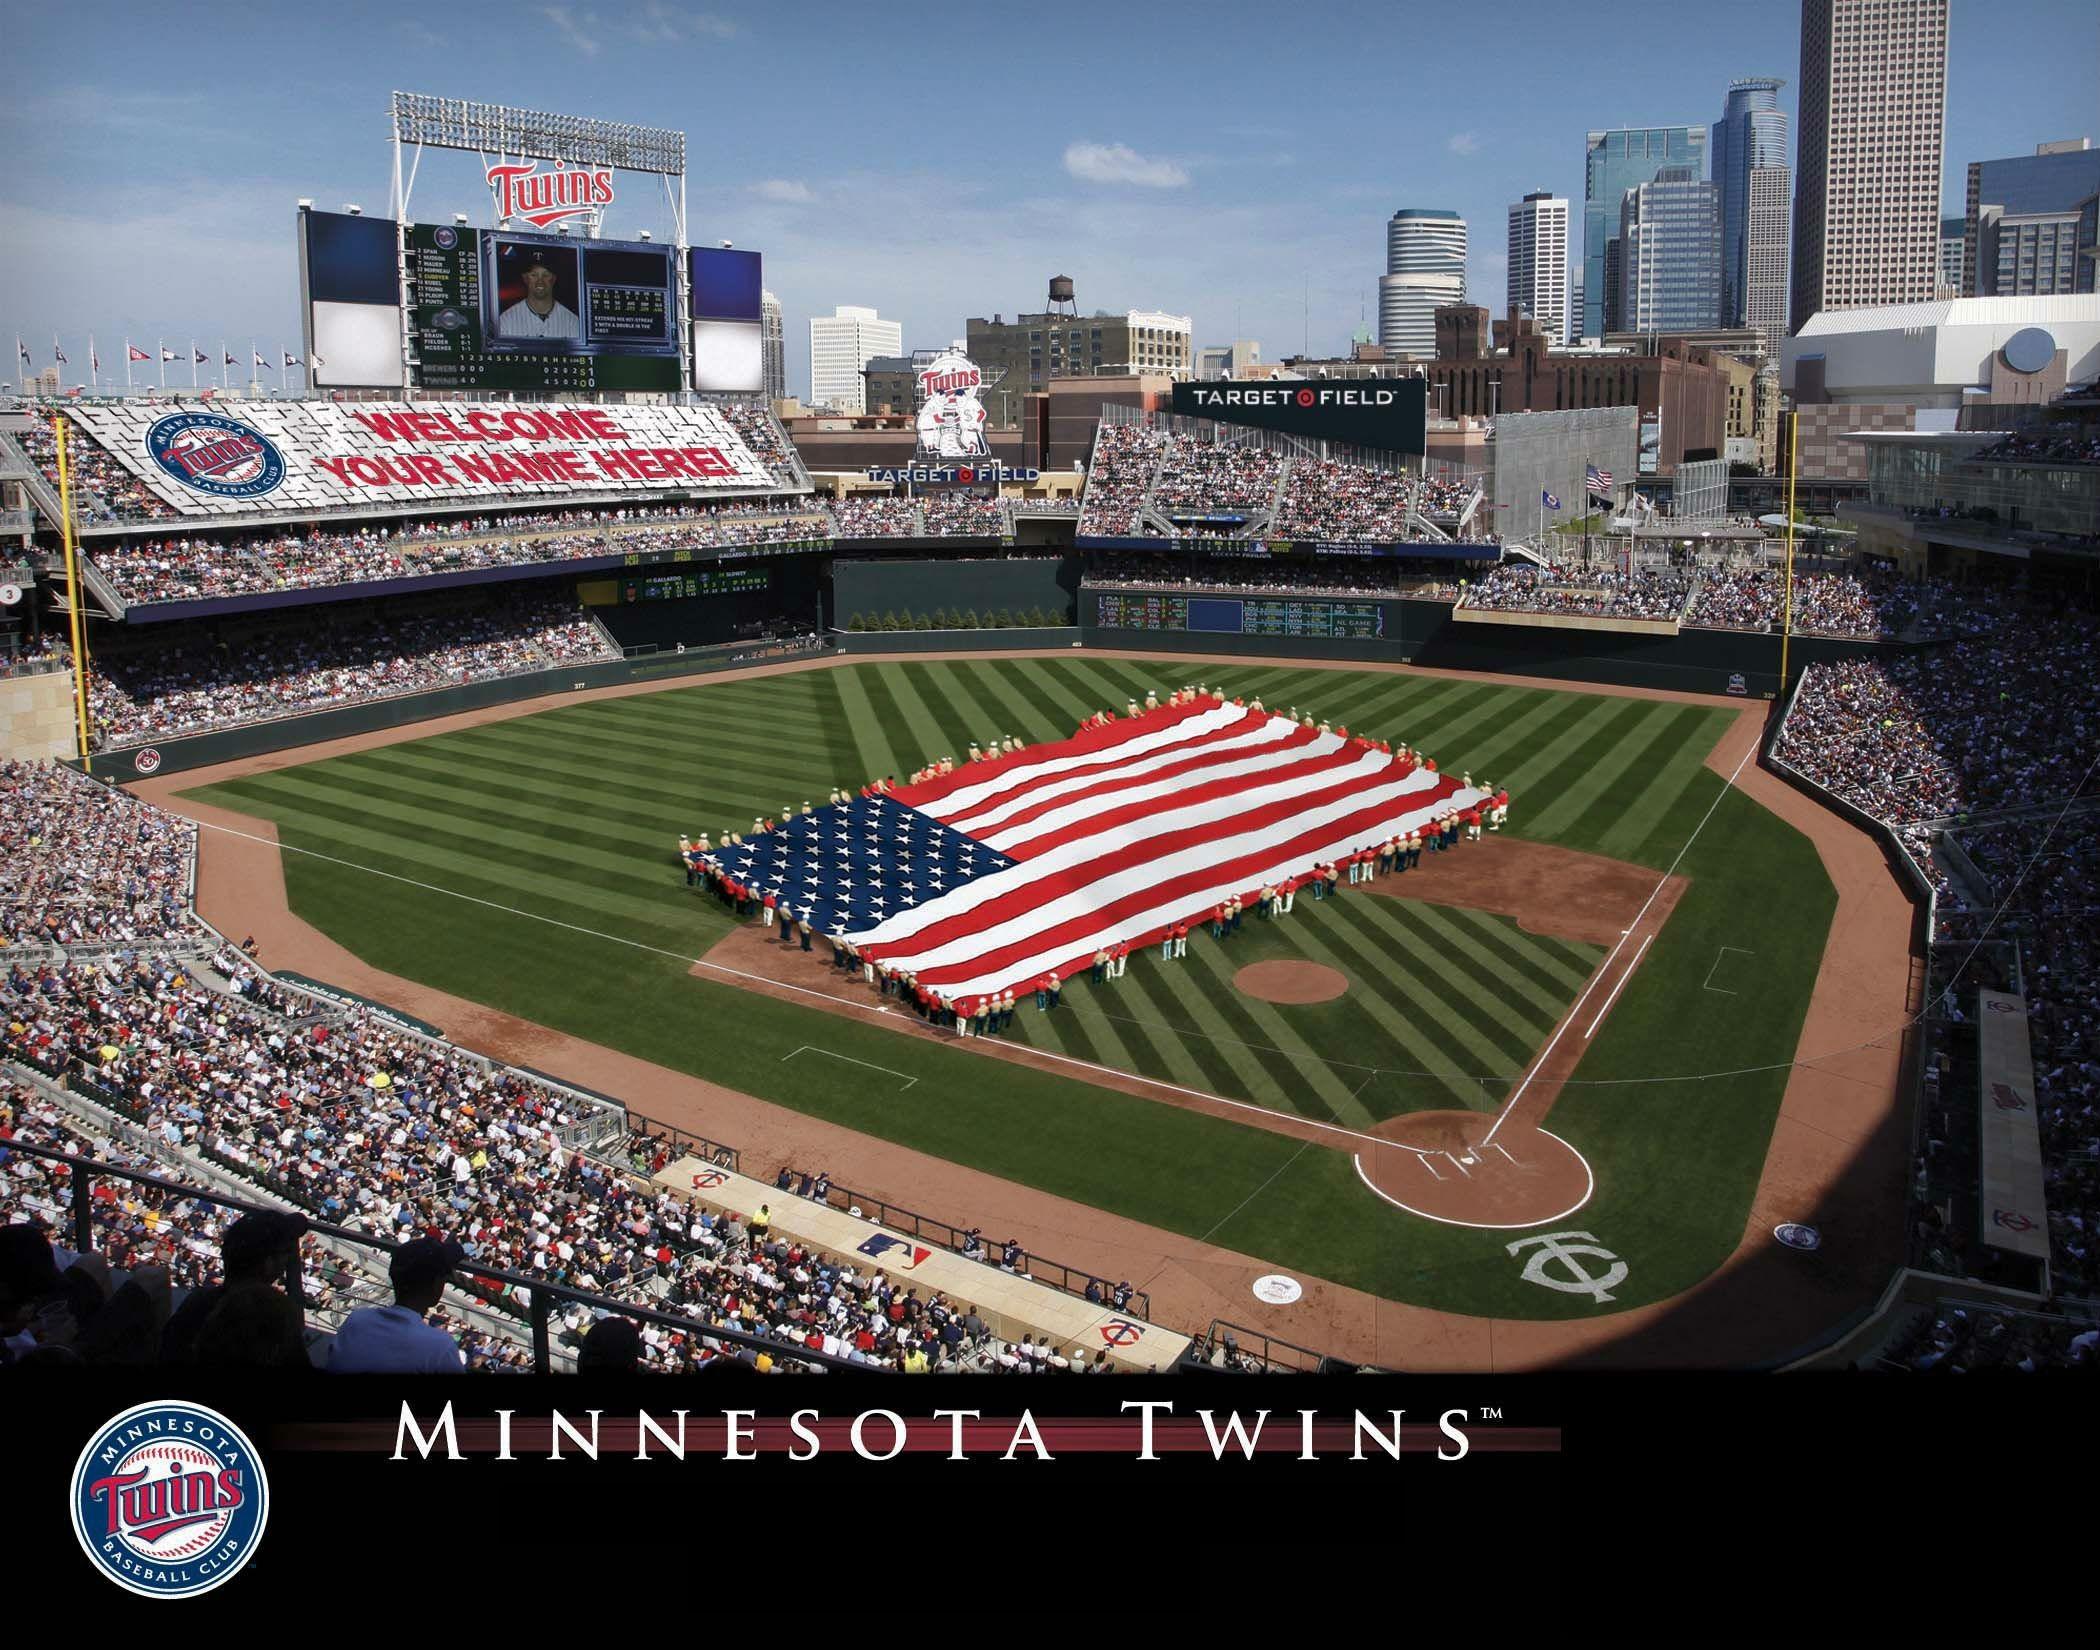 Minnesota Twins Wallpaper